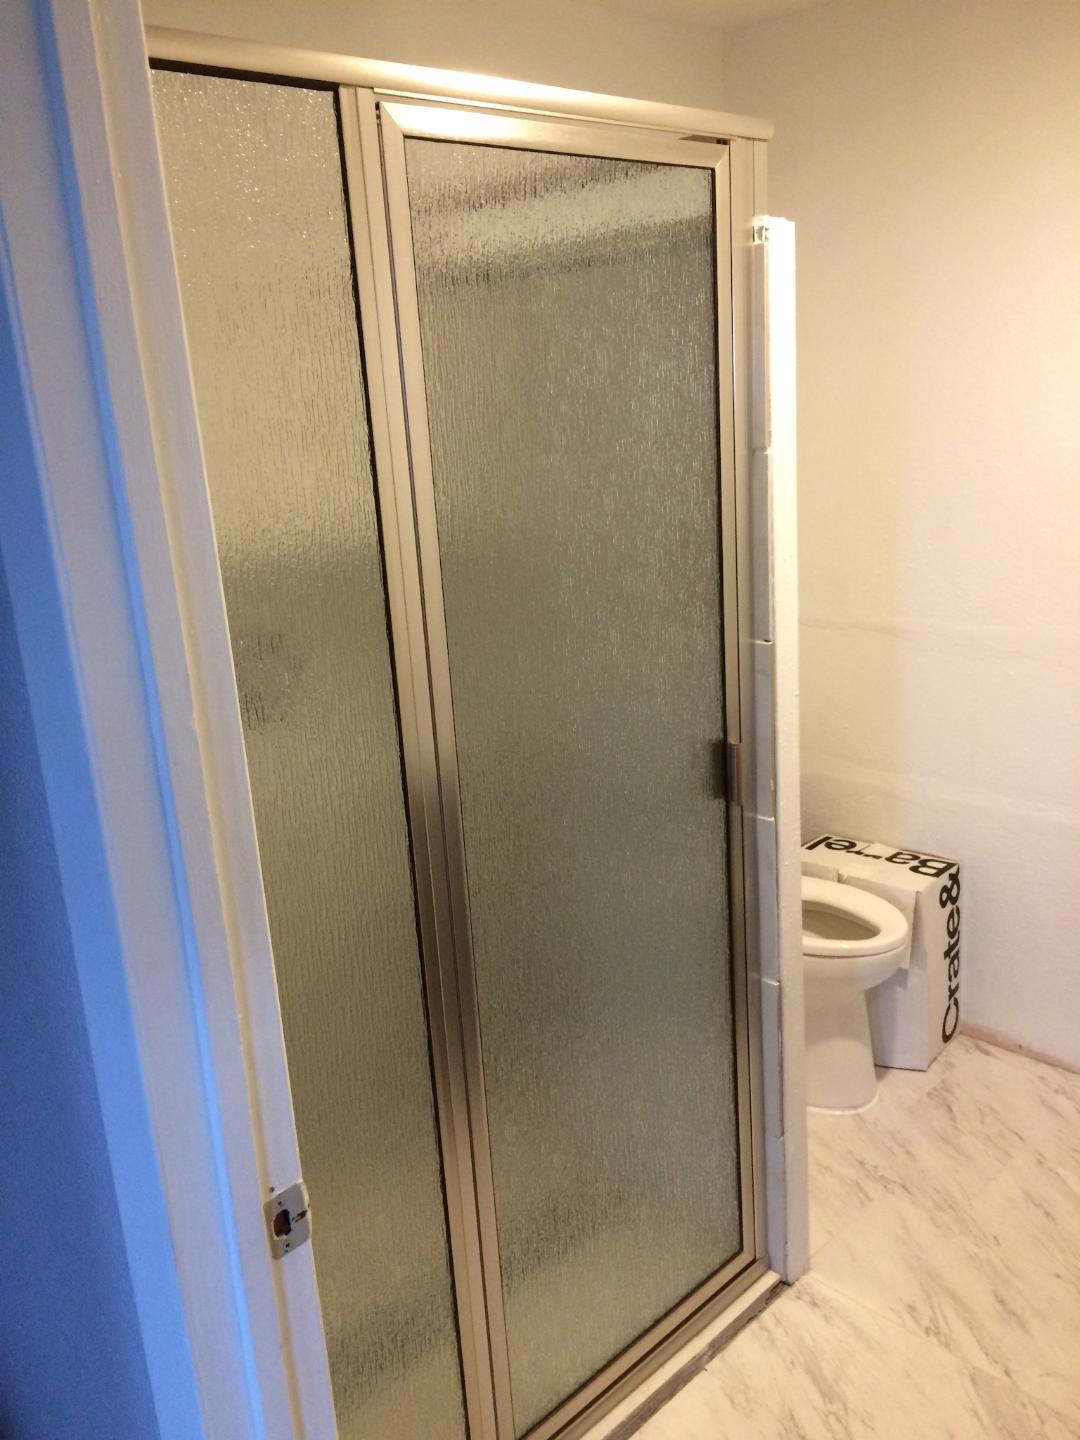 residential glass shower doors